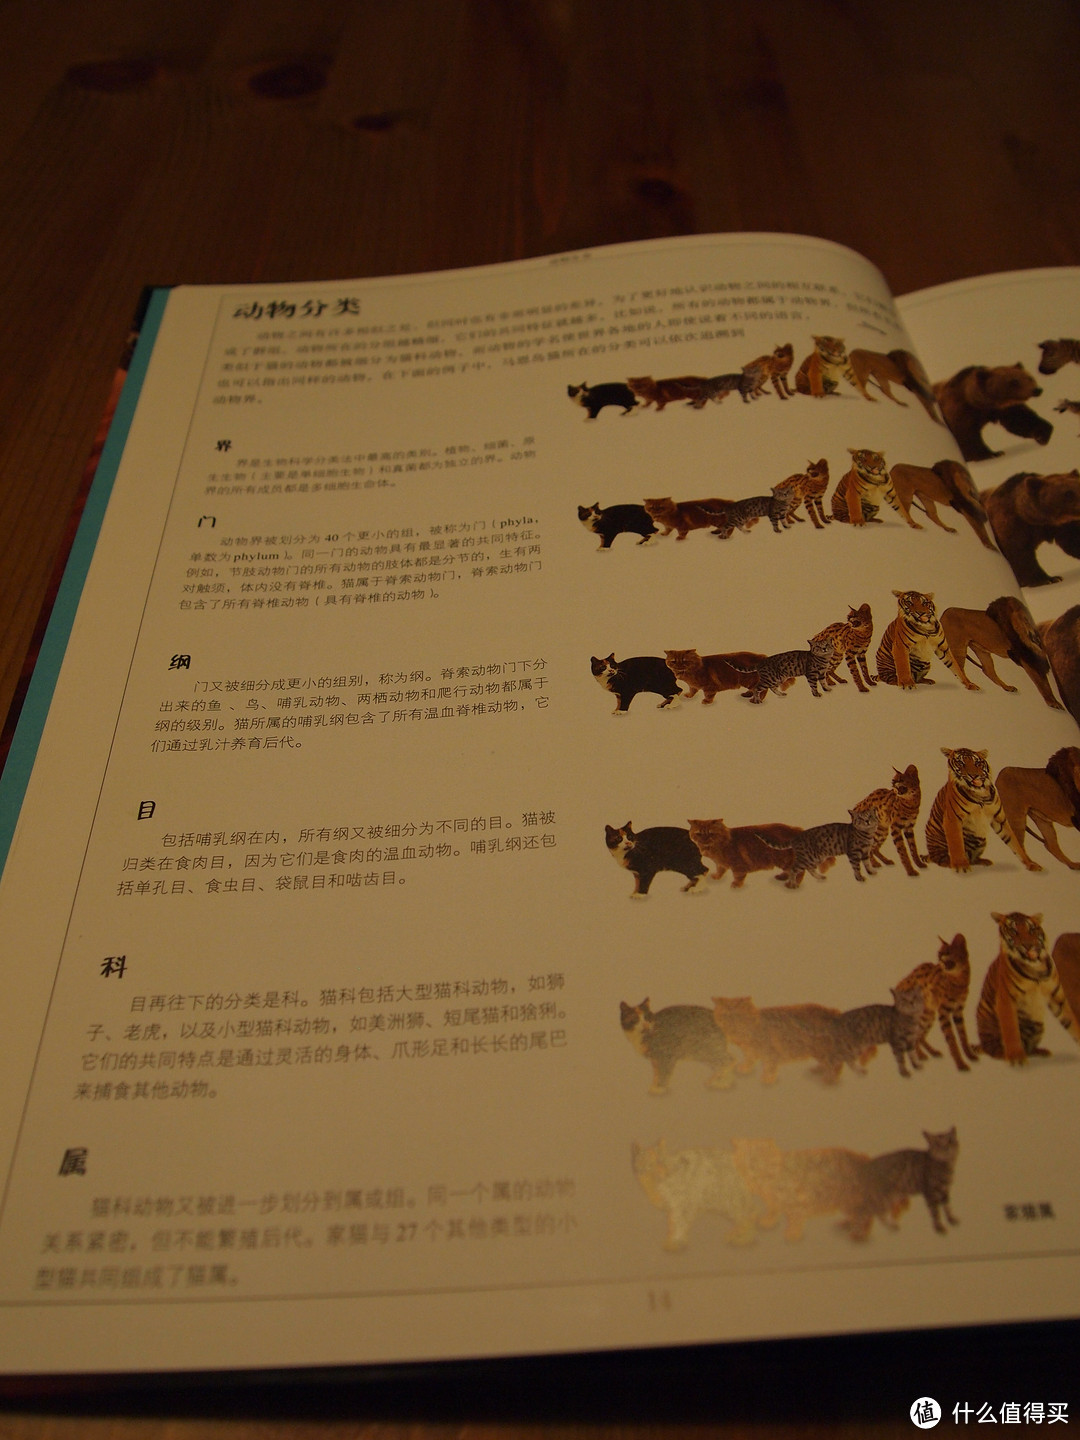 熊孩子迟到的圣诞礼物：《DK儿童大百科(动物+自然)》